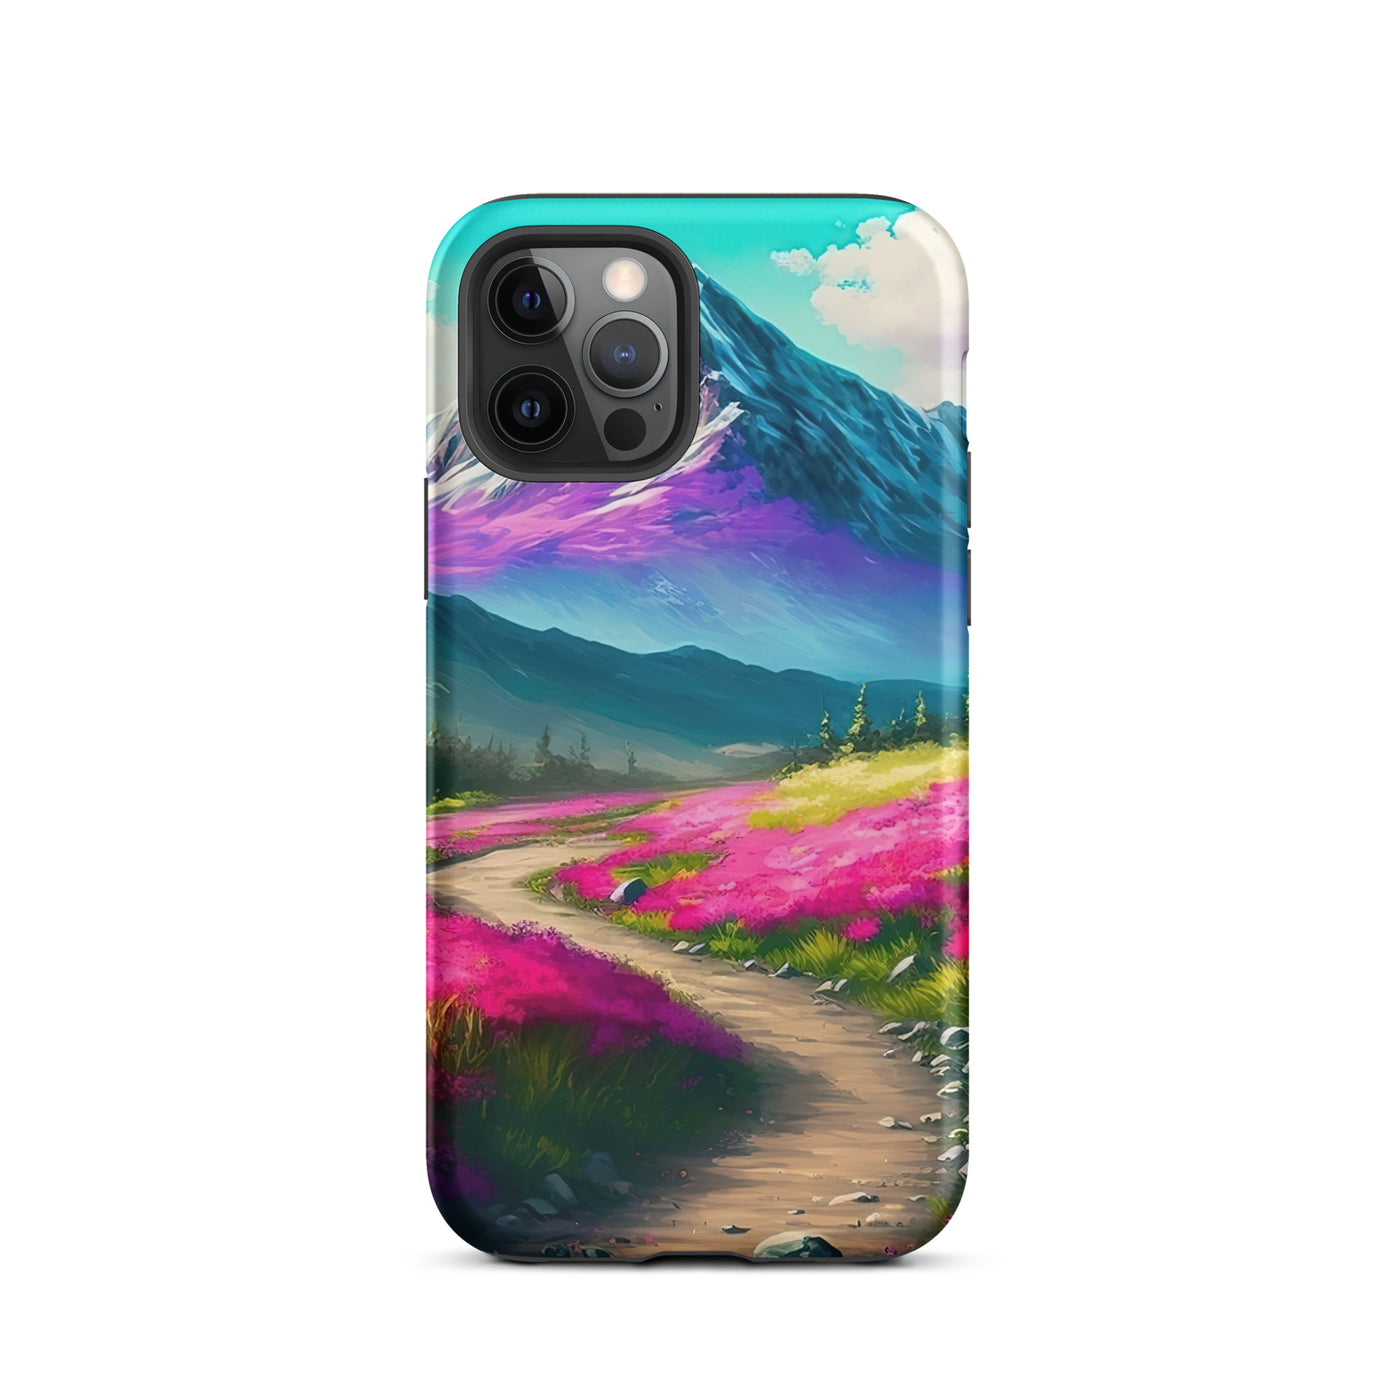 Berg, pinke Blumen und Wanderweg - Landschaftsmalerei - iPhone Schutzhülle (robust) berge xxx iPhone 12 Pro